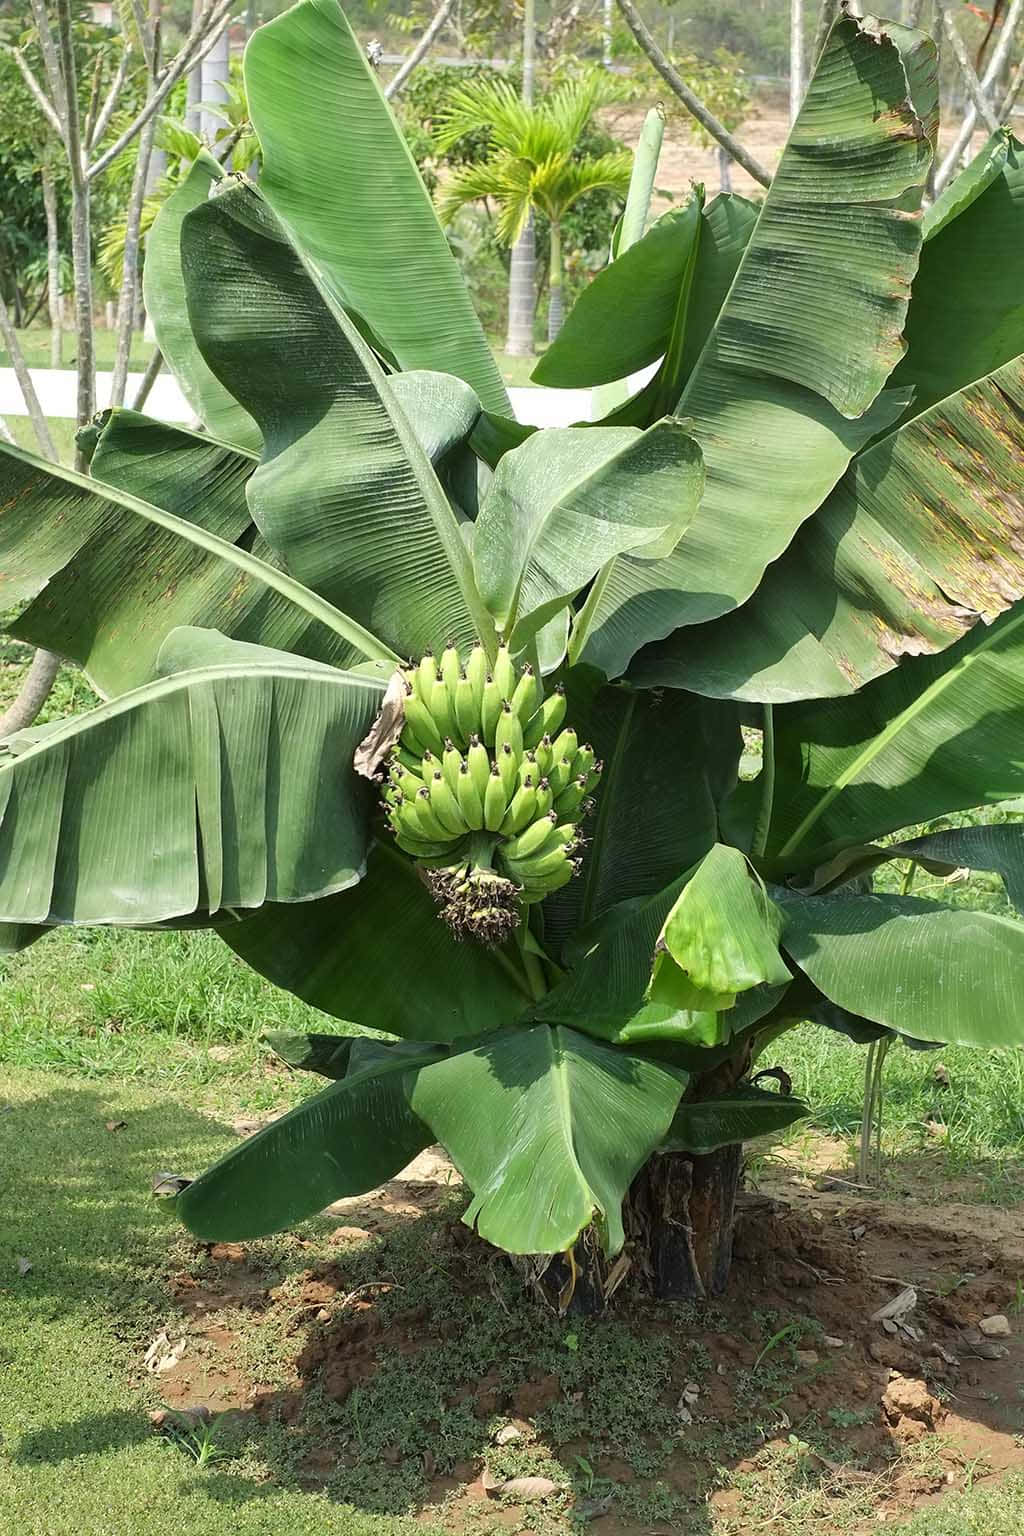 Enjoying a Moment of Peace near a Banana Tree